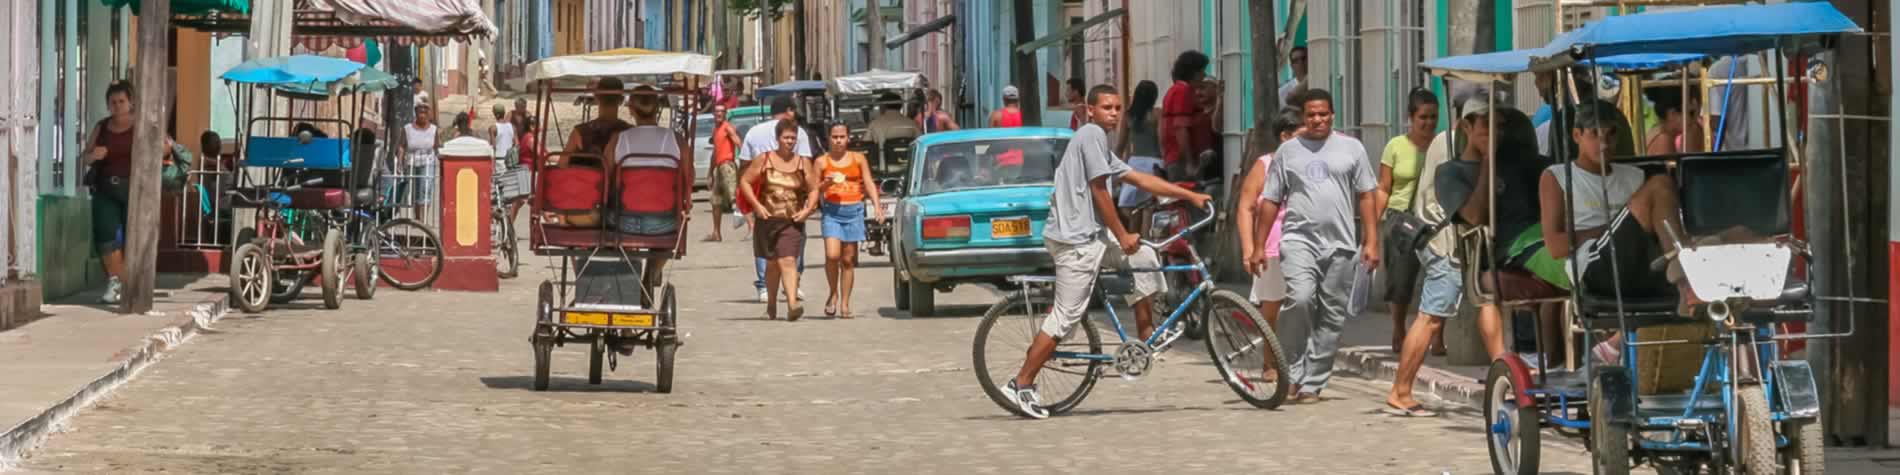 Gente en las calles de trinidad